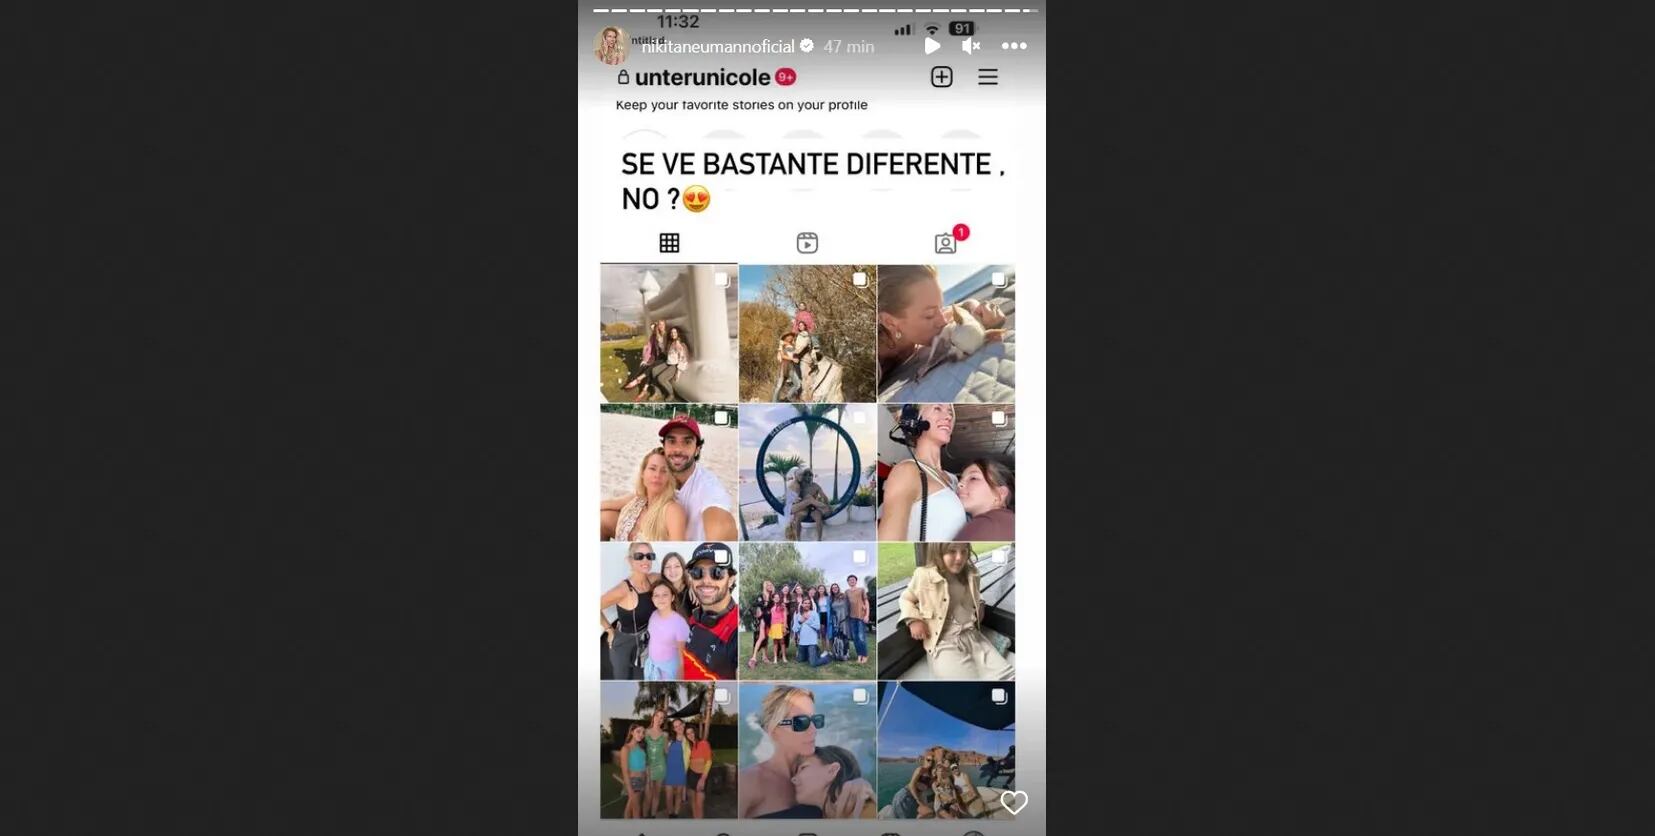 Nicole Neumann reveló por error su verdadera cuenta de Instagram y los detalles la dejaron en evidencia: “Bastante diferente”